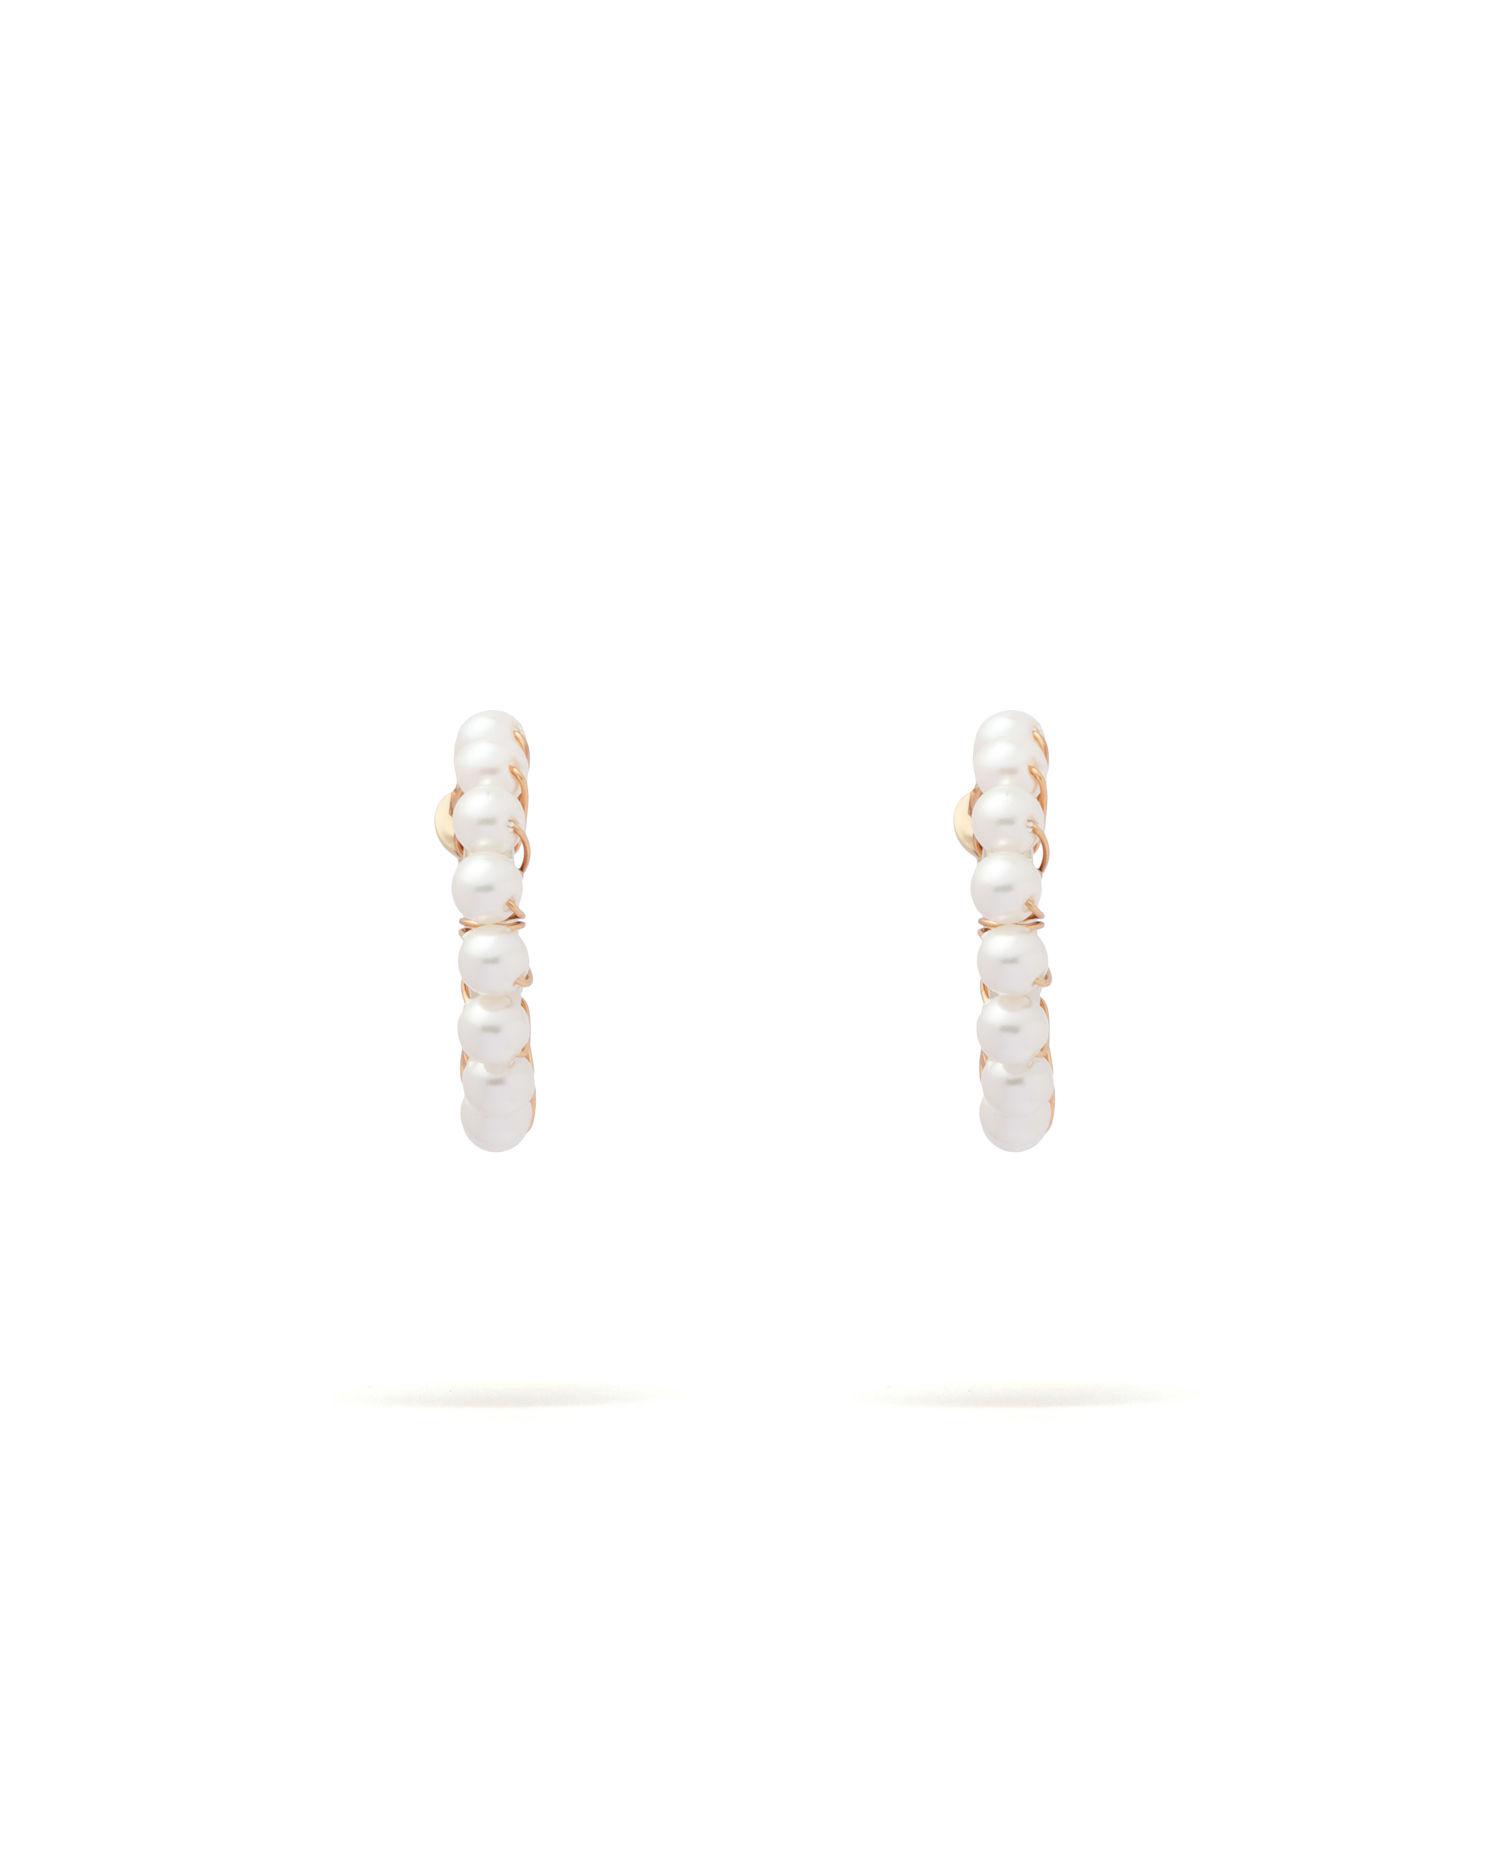 Pearl earrings by BEAMS BOY